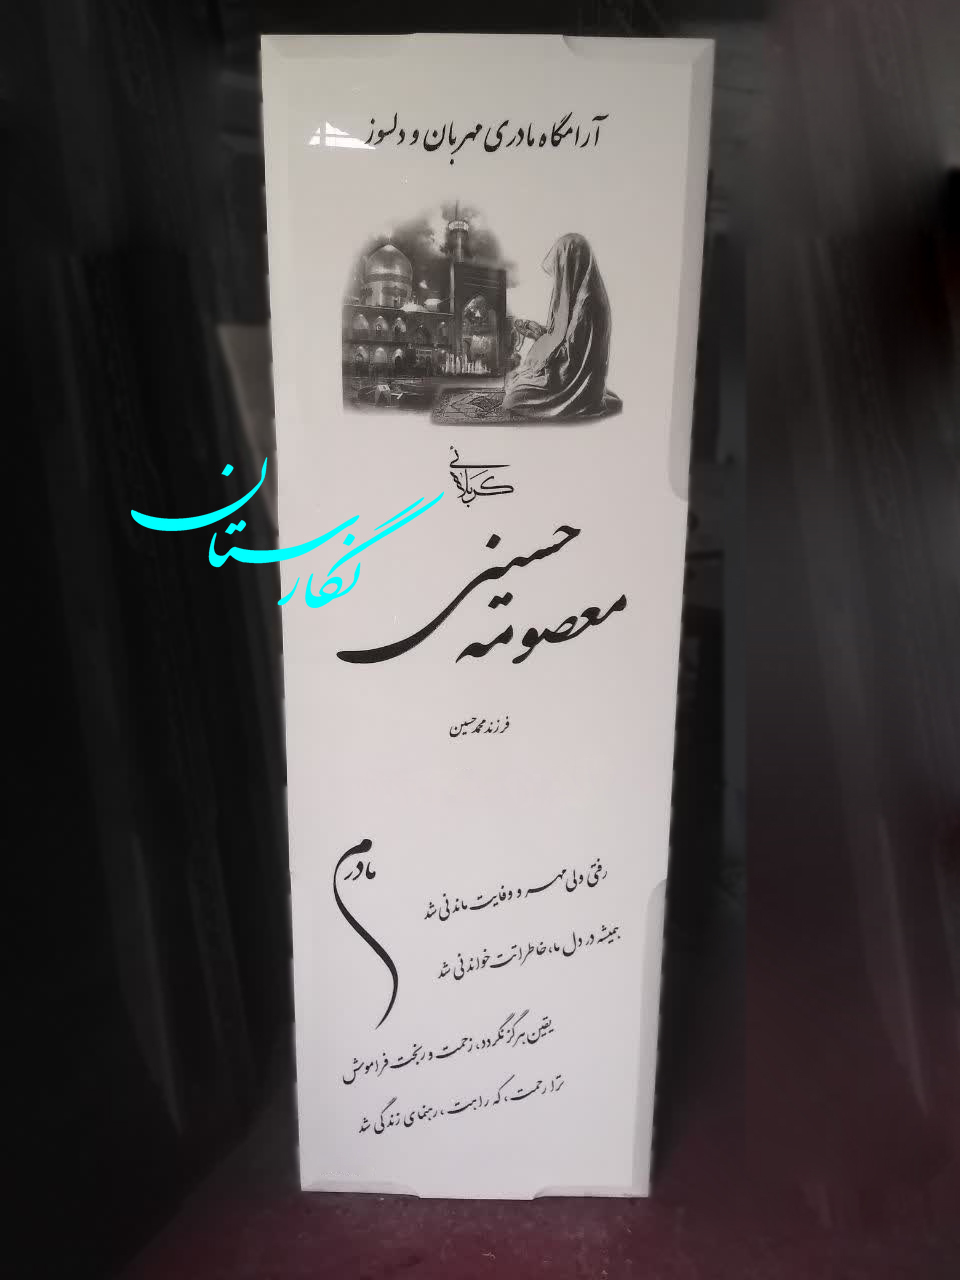  سنگ مزار نانو ایرانی تک کد 192| فروشگاه سنگ مزار نگارستان 